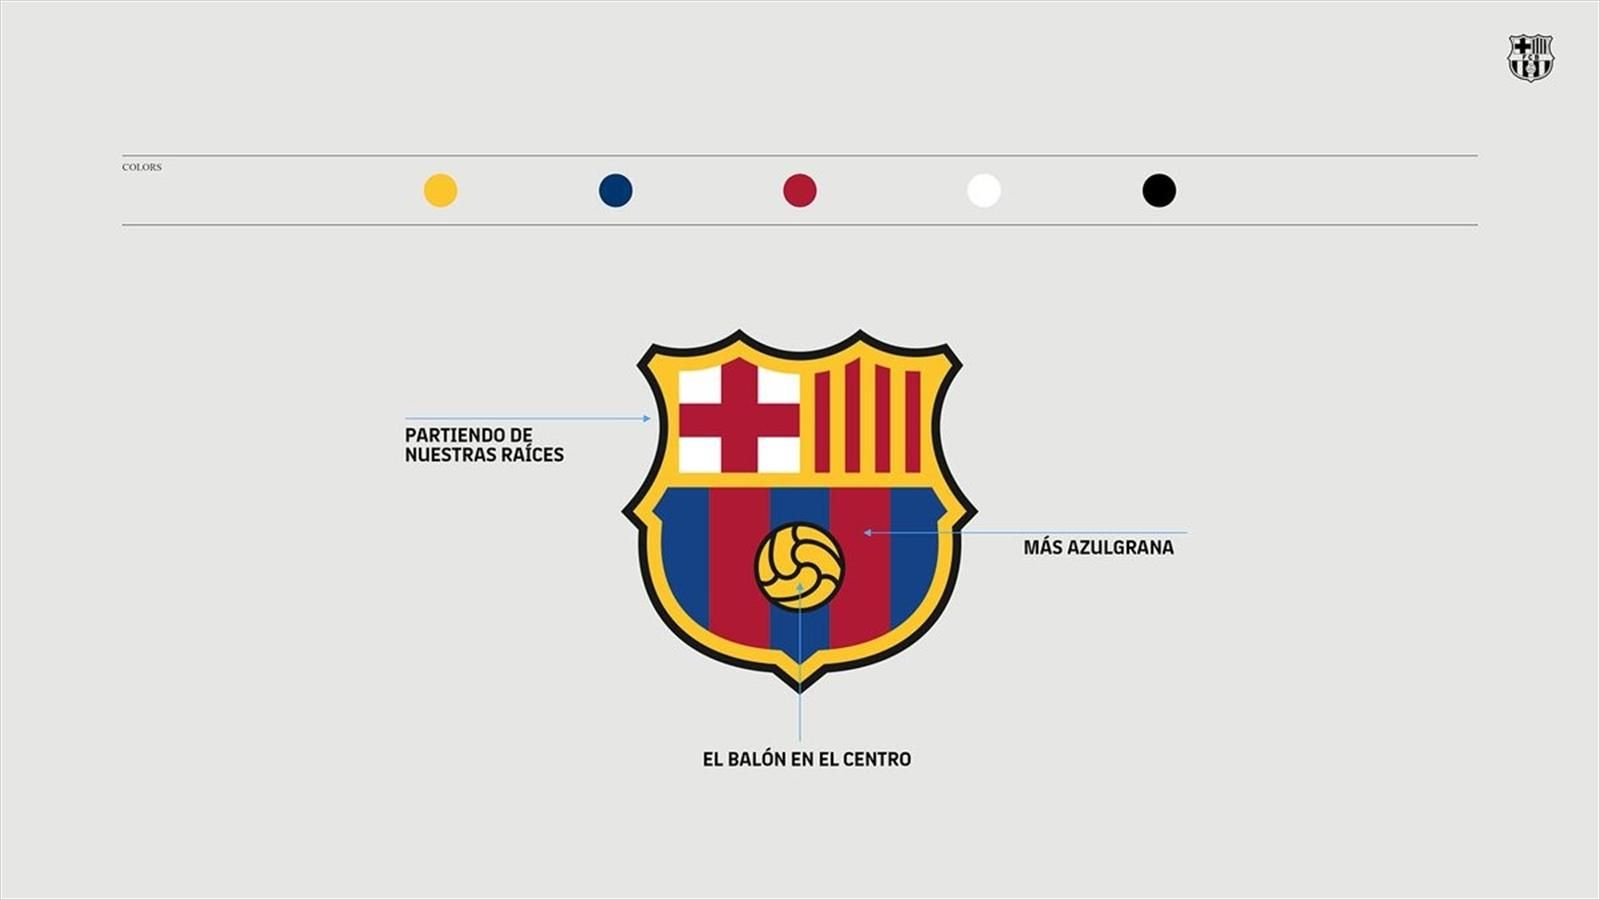 Barcelona propondrá a sus socios actualizar diseño de su escudo para próxima temporada